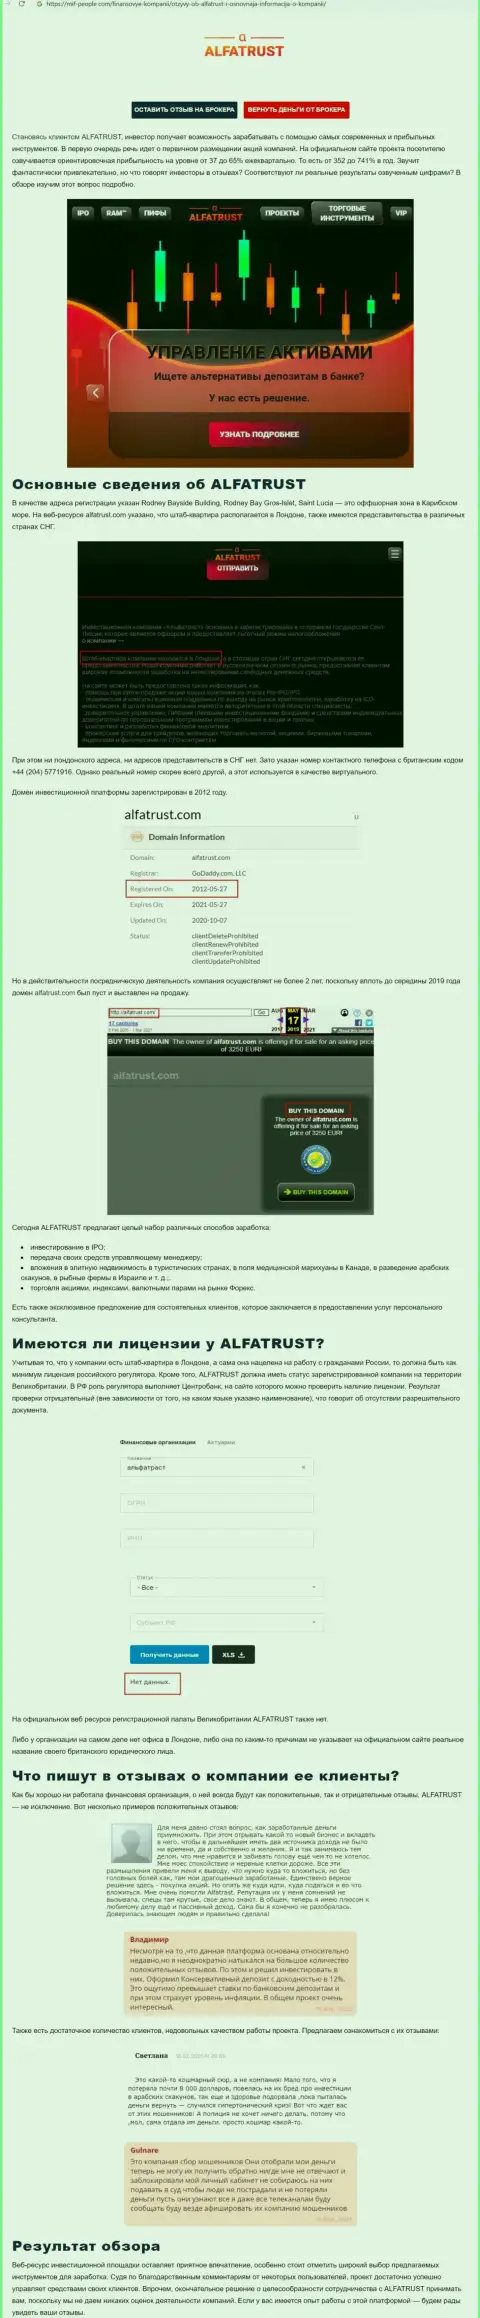 Web-портал Mif-People Com показал статью о forex дилере AlfaTrust Com